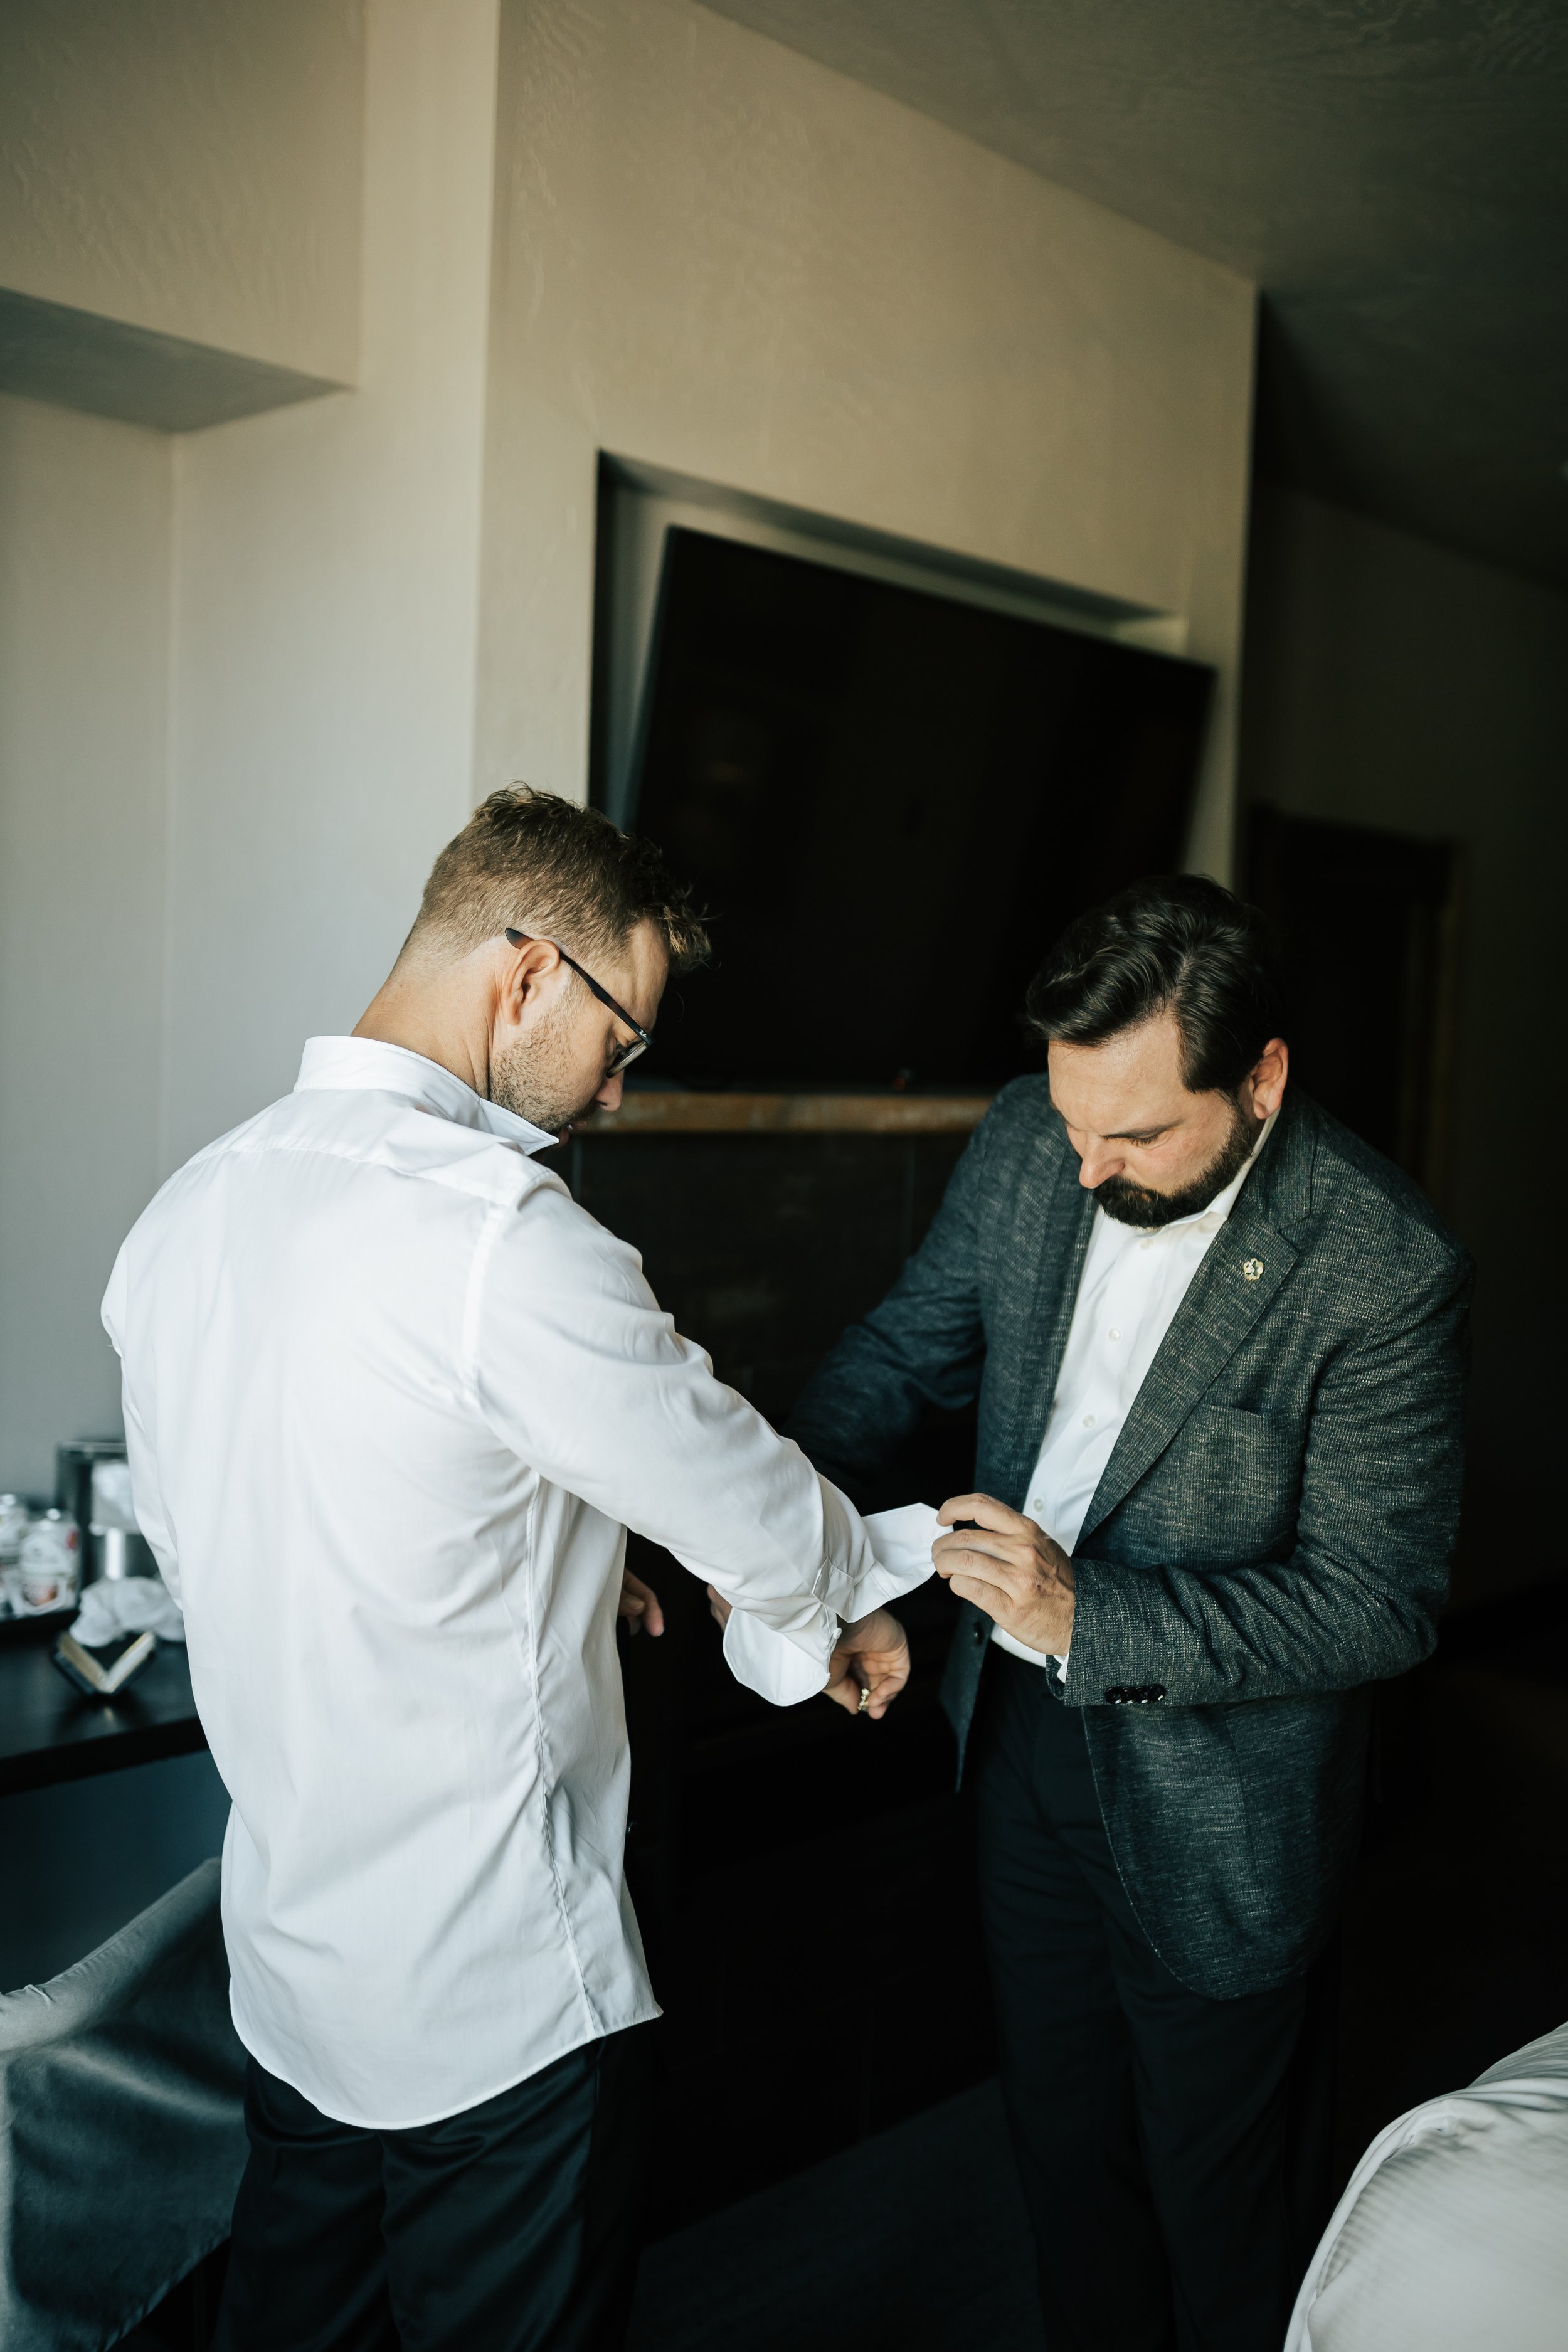  Getting ready photos. Groom gets ready in hotel room before wedding. Groomsman helps groom get ready. #montanawedding #utahwedding #gettingreadyphotos 